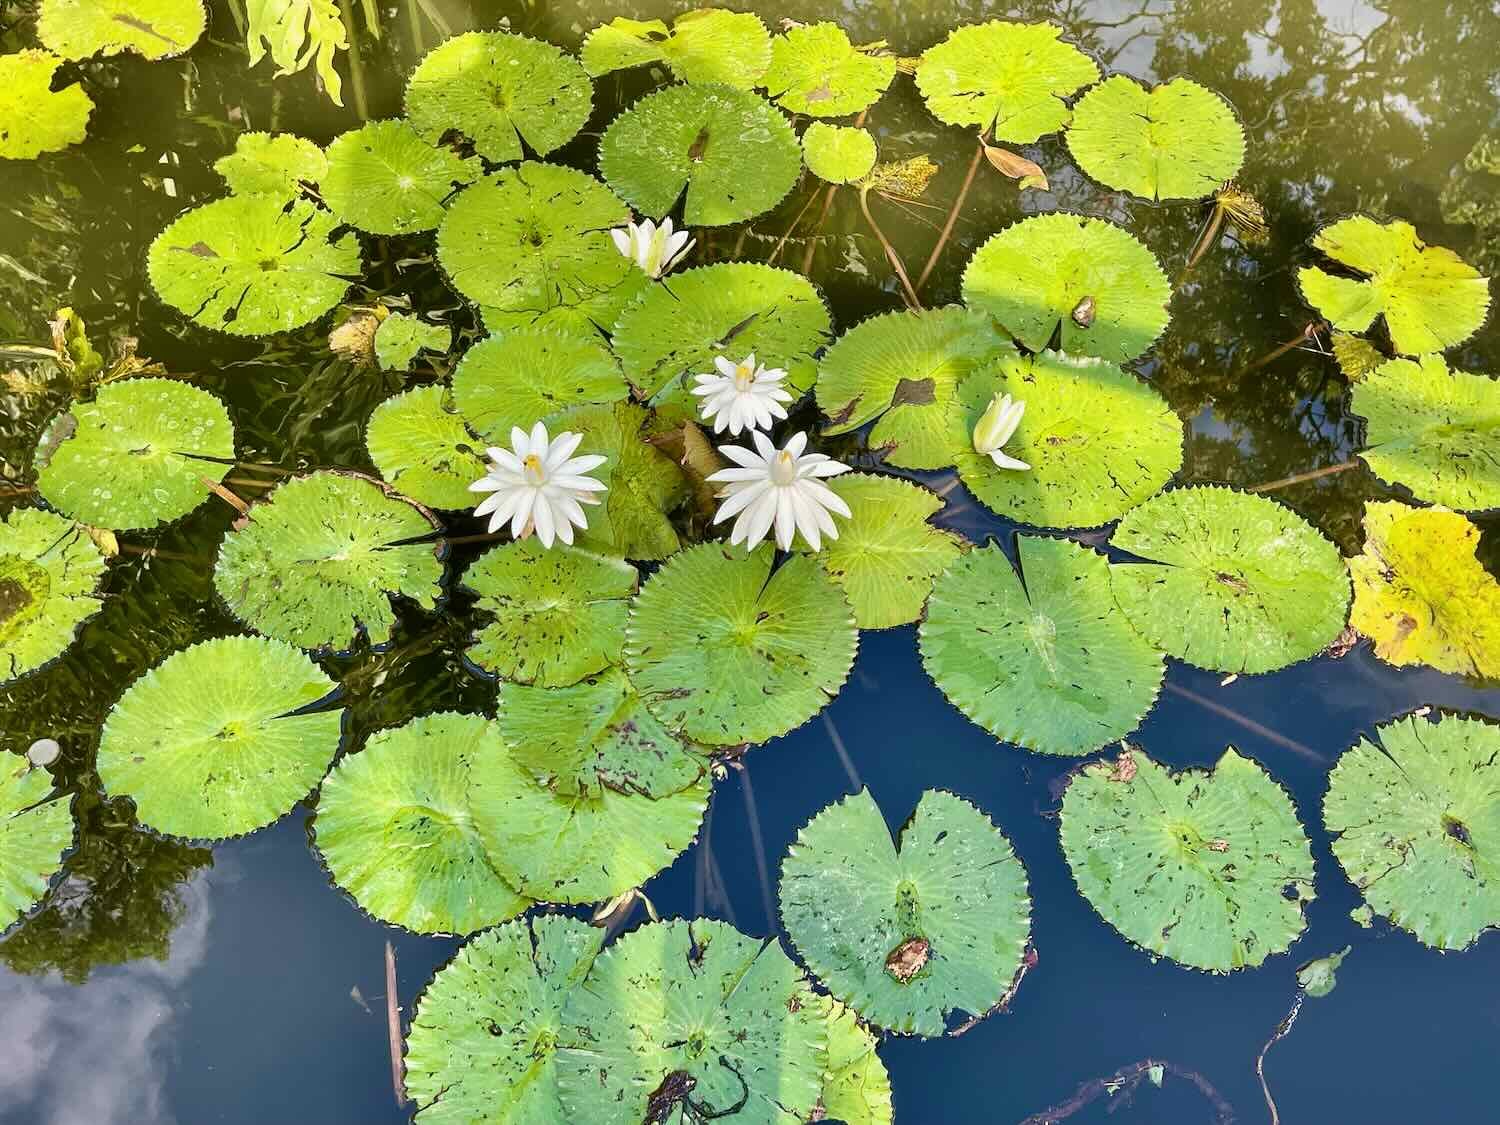 Koi goldfish swam among the pond lilies